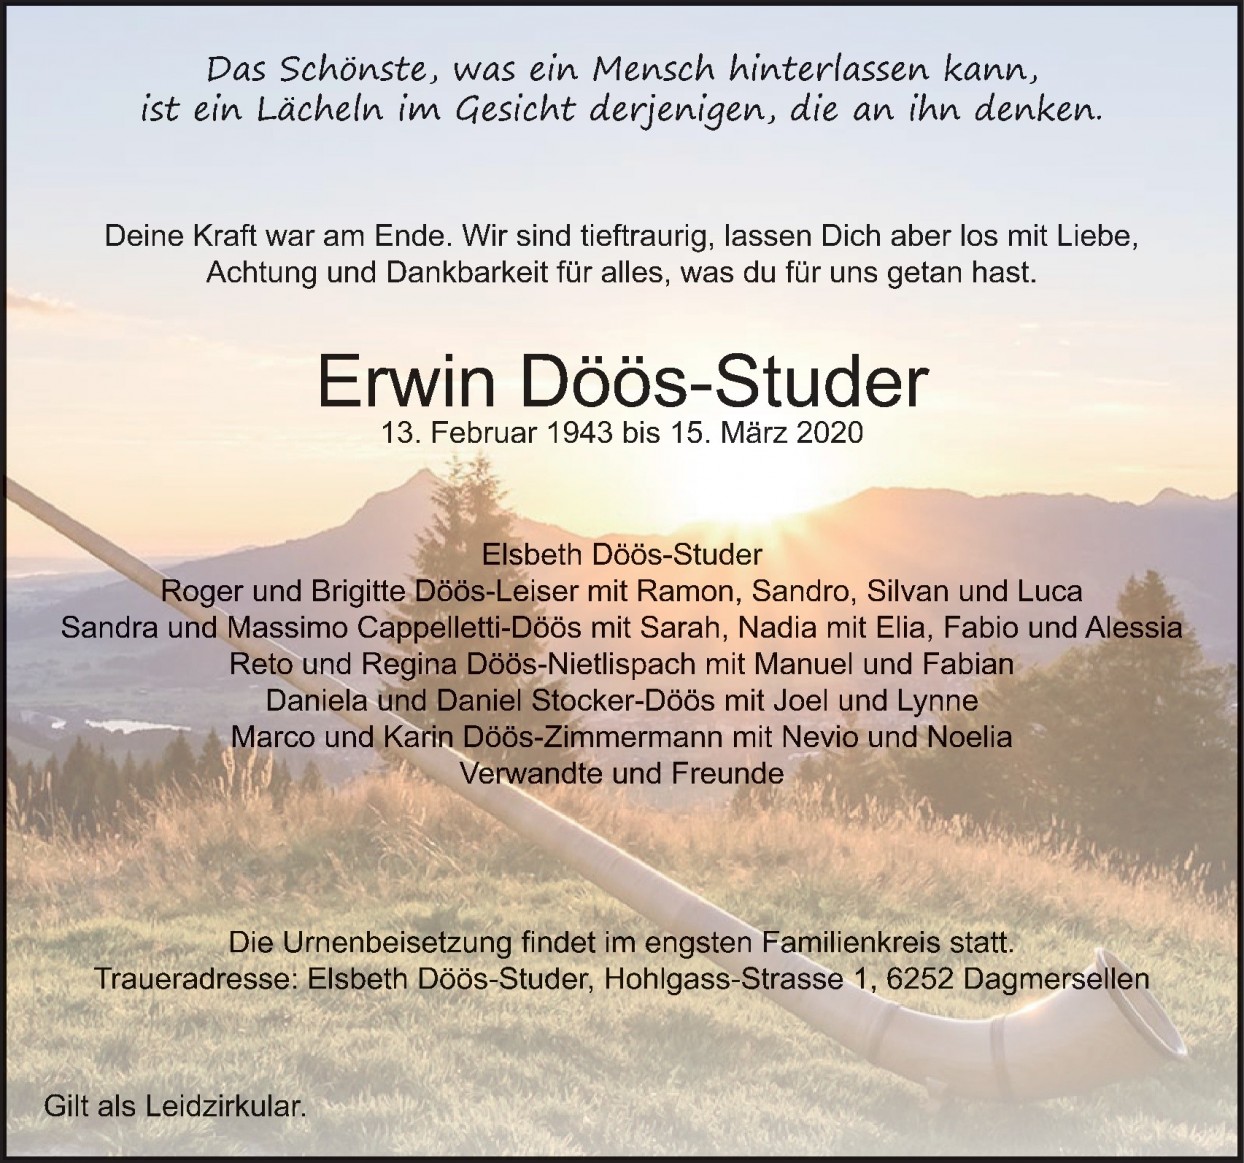 Erwin Döös-Studer